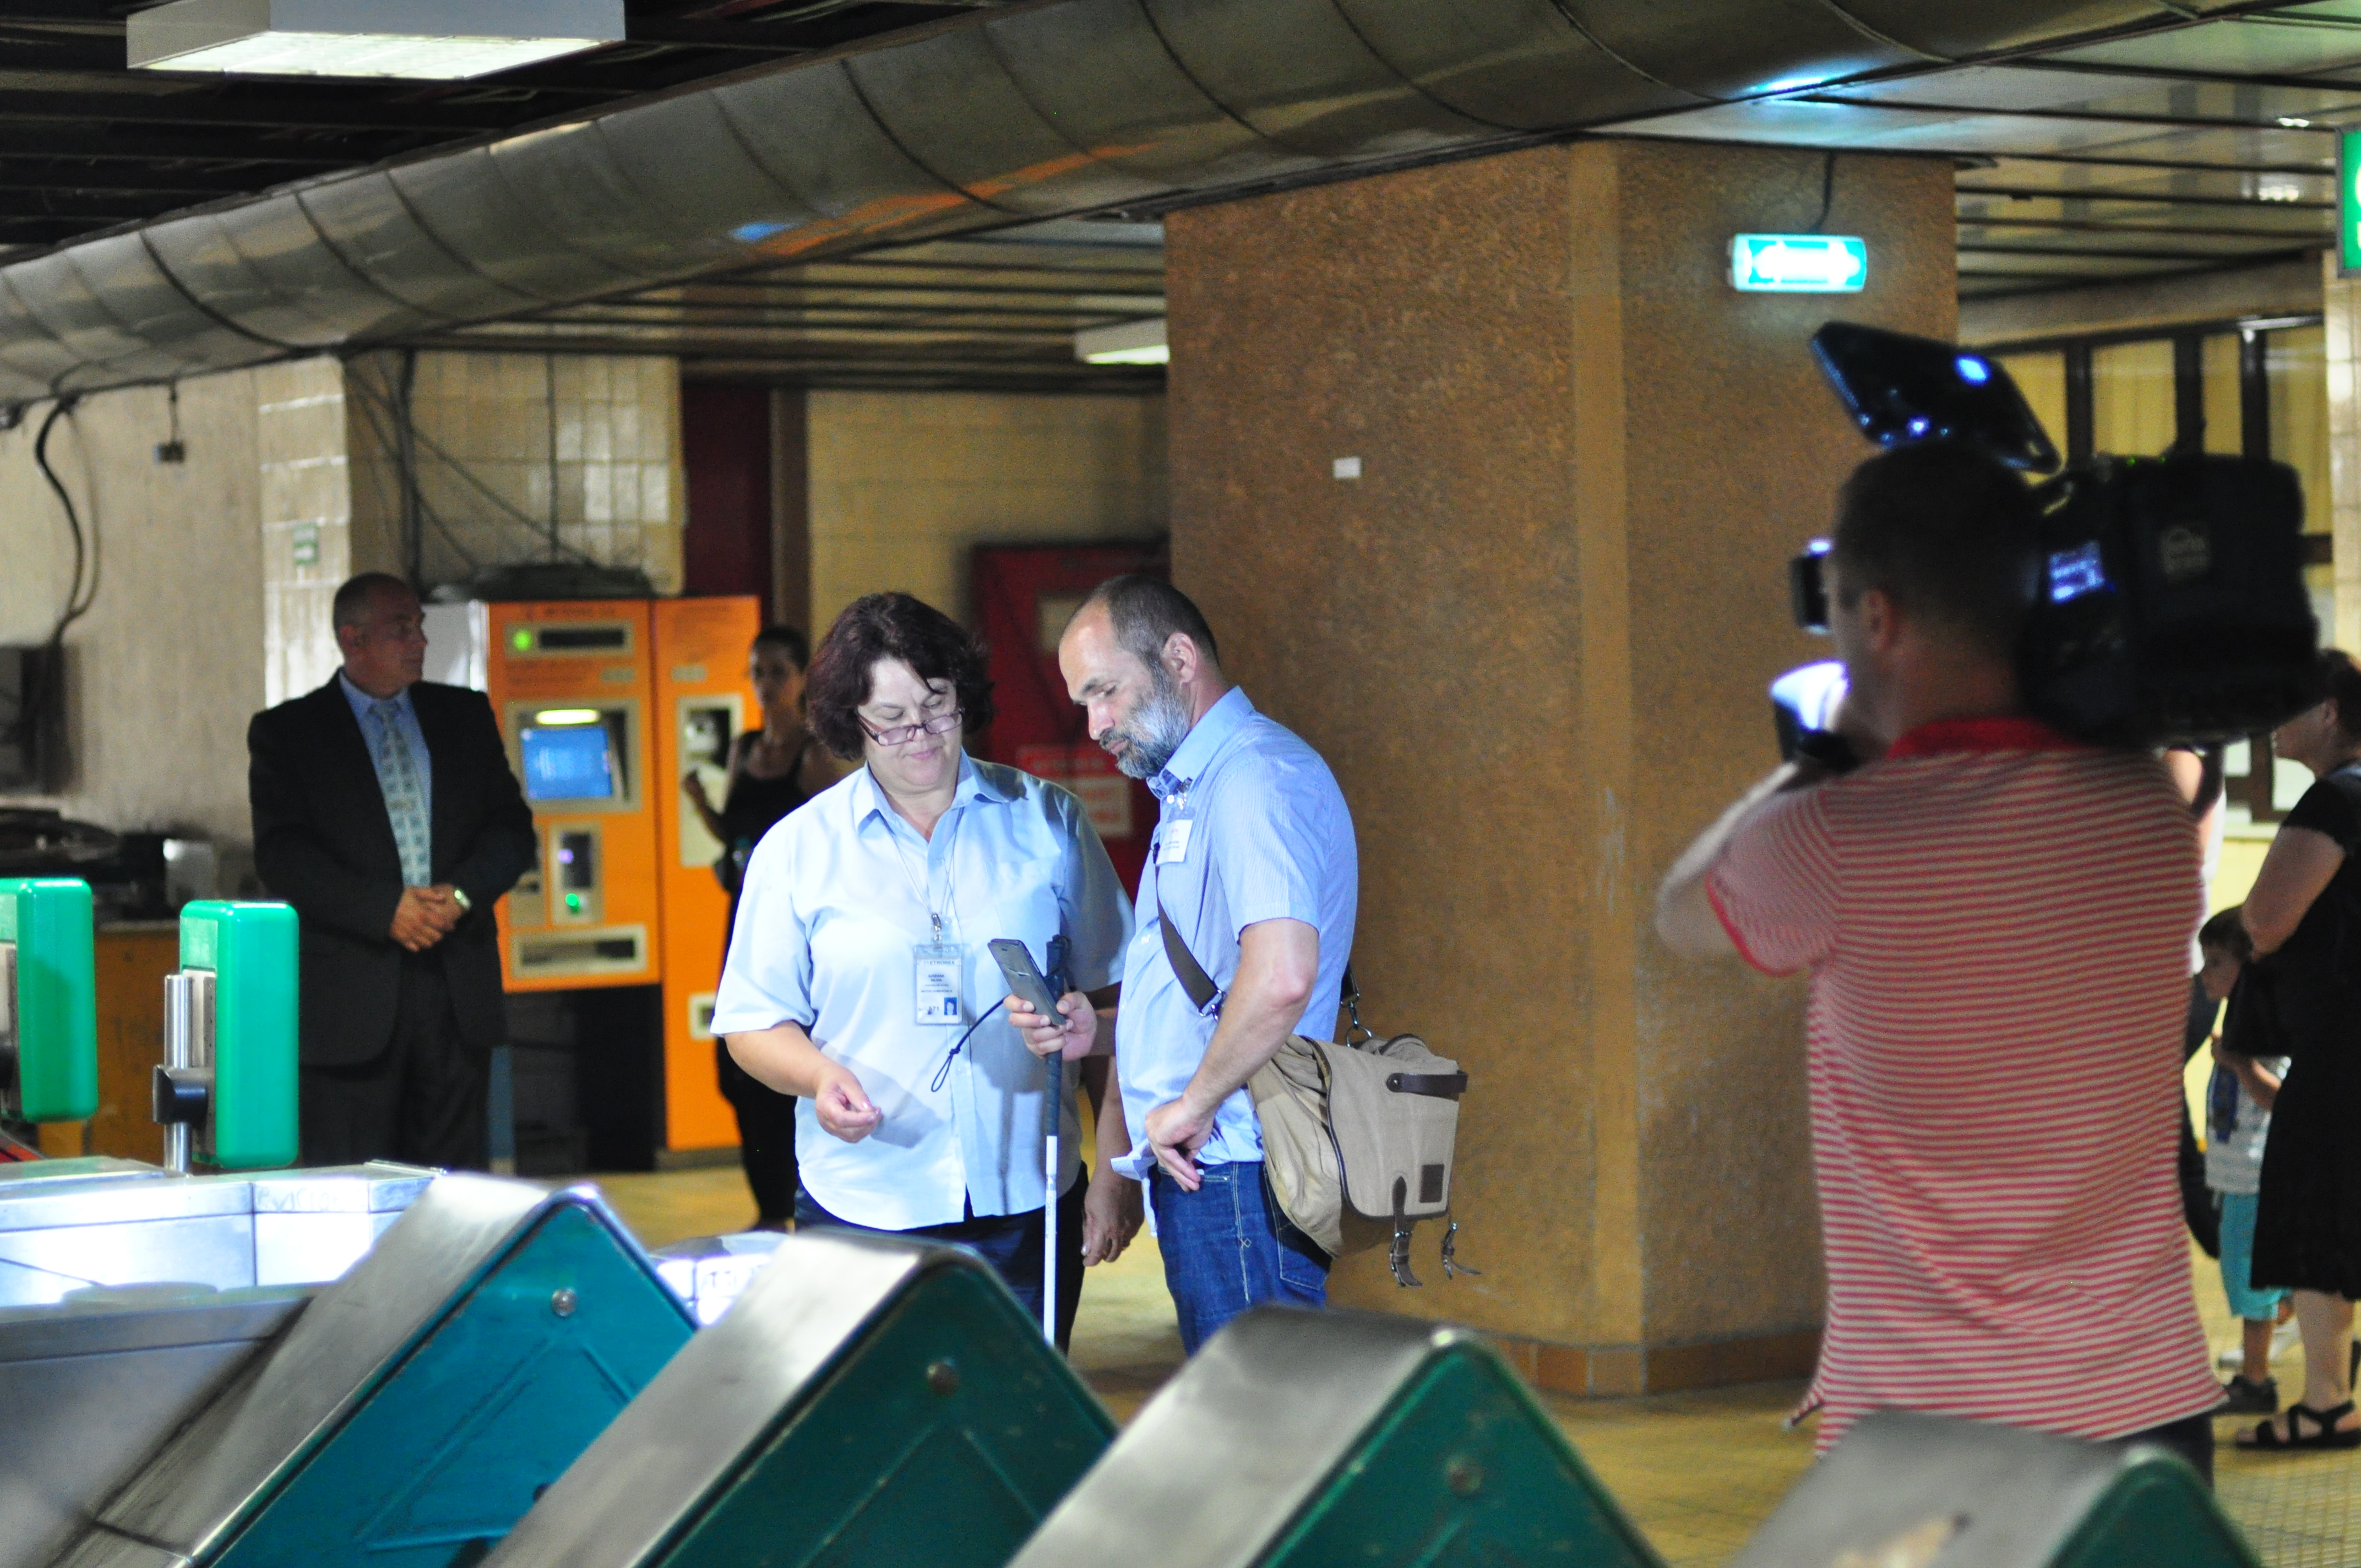 el metro accesible para personas con discapacidad visual, la fundación naranja